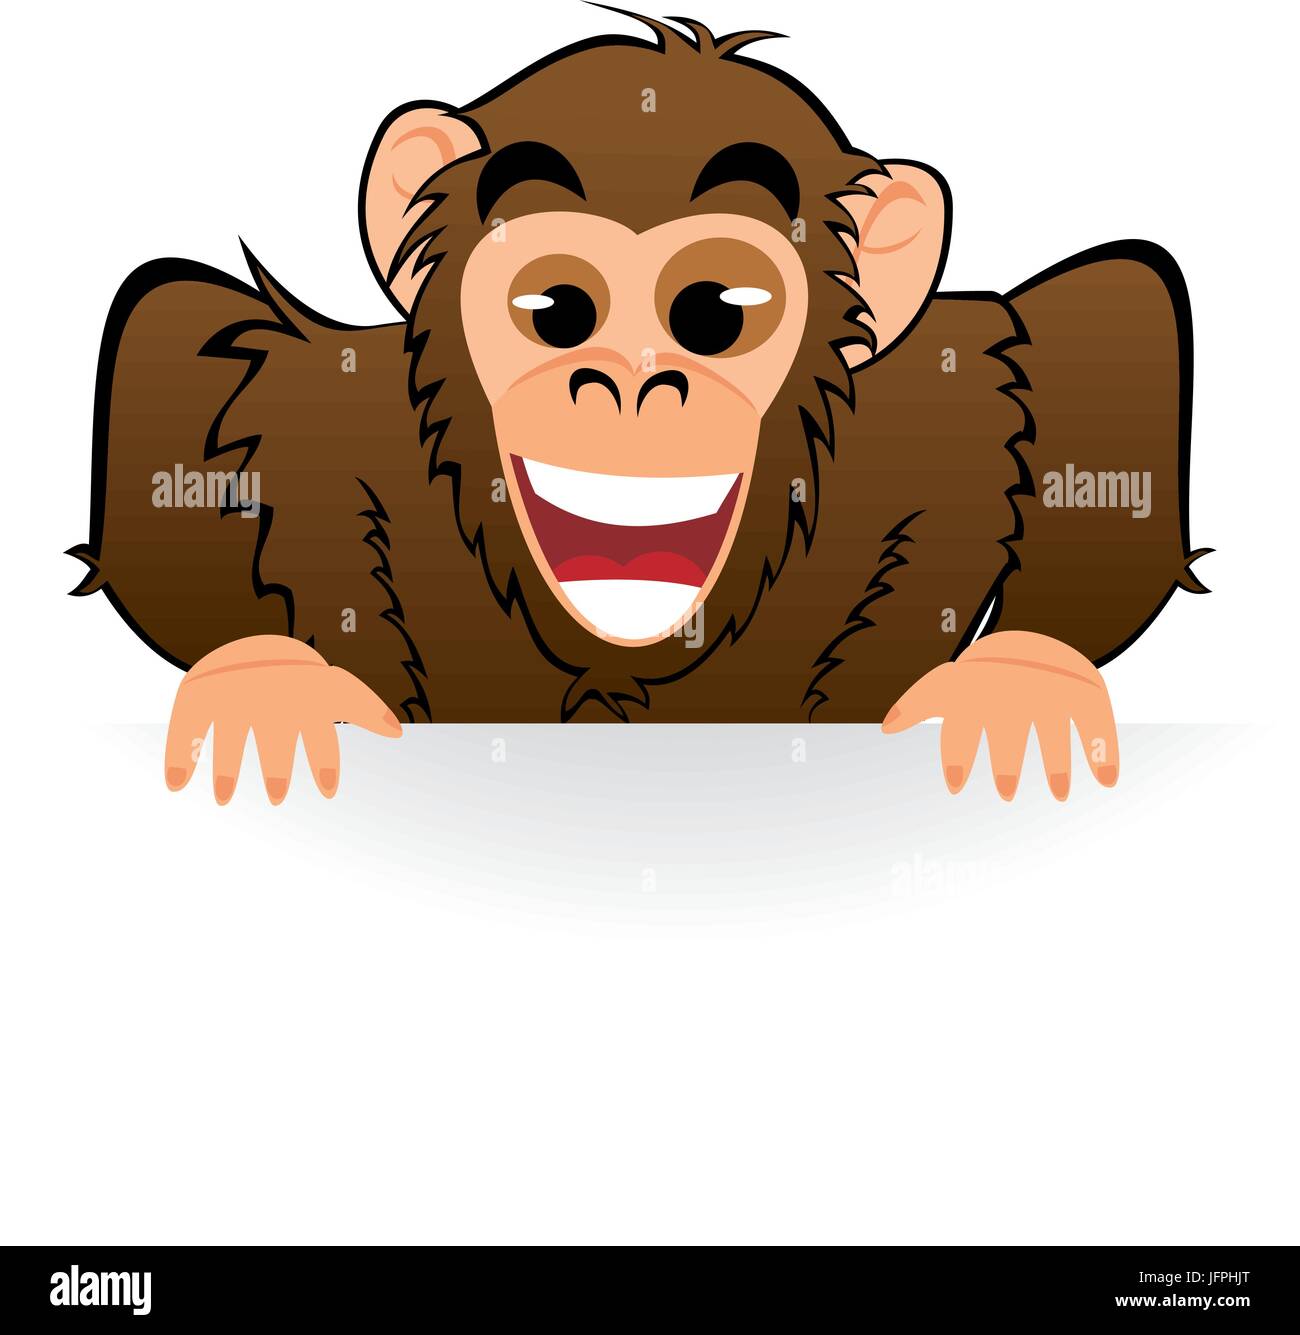 Monkey derrière white board Illustration de Vecteur